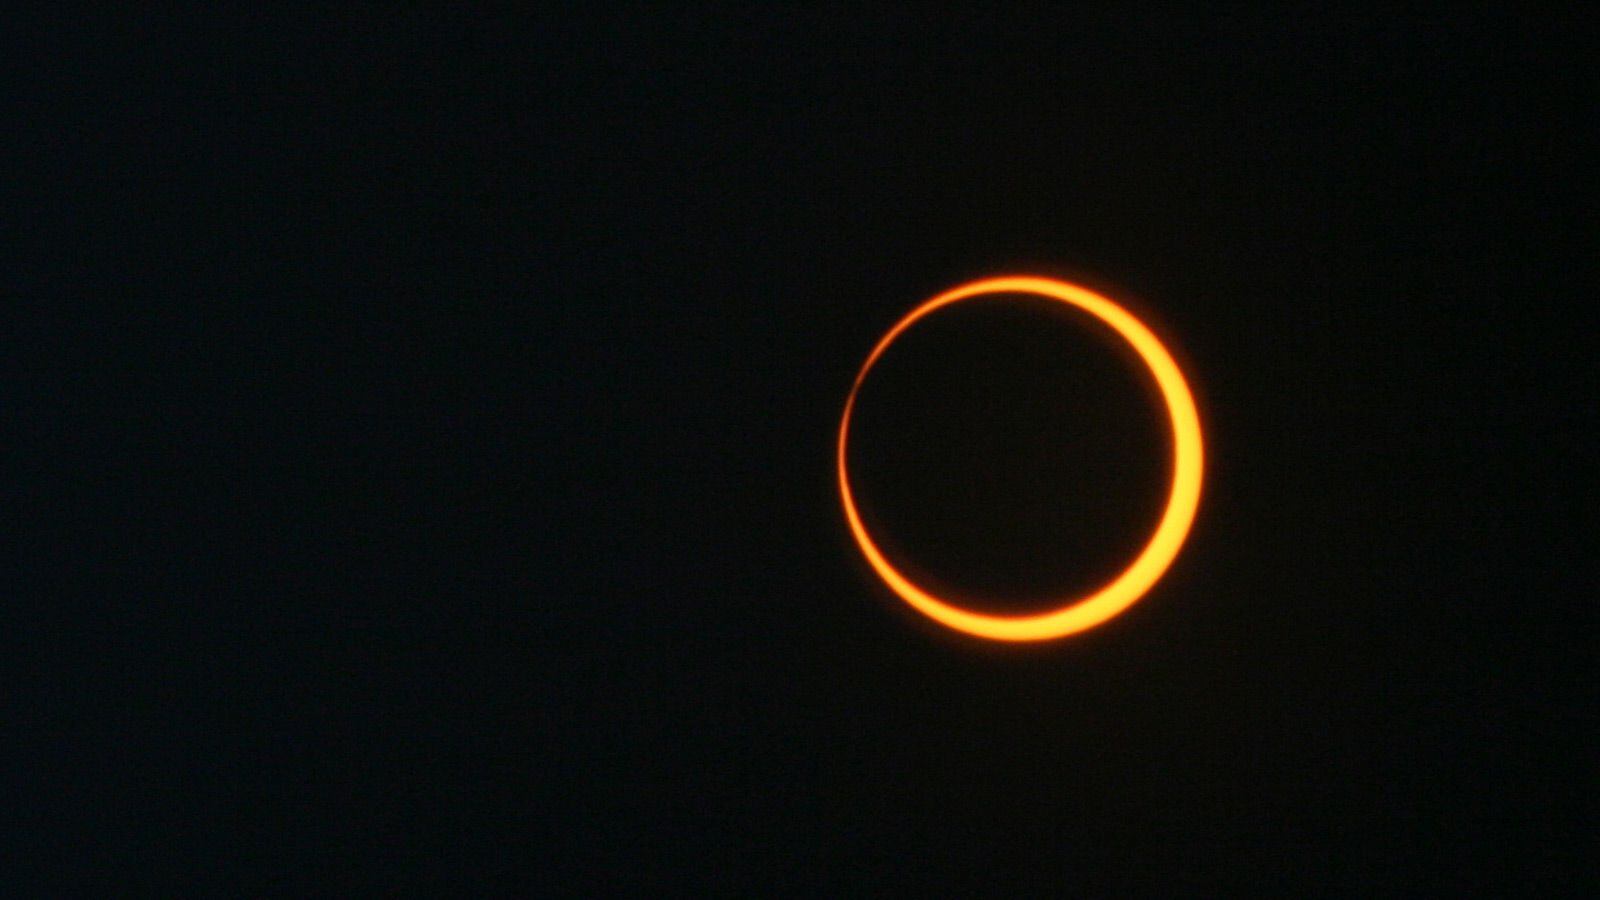 El eclipse anular solar sucede cuando la Luna se posiciona frente al Sol y no cubre por completo su superficie, por lo que se proyecta un disco oscuro encima de un disco más grande y luminoso. 